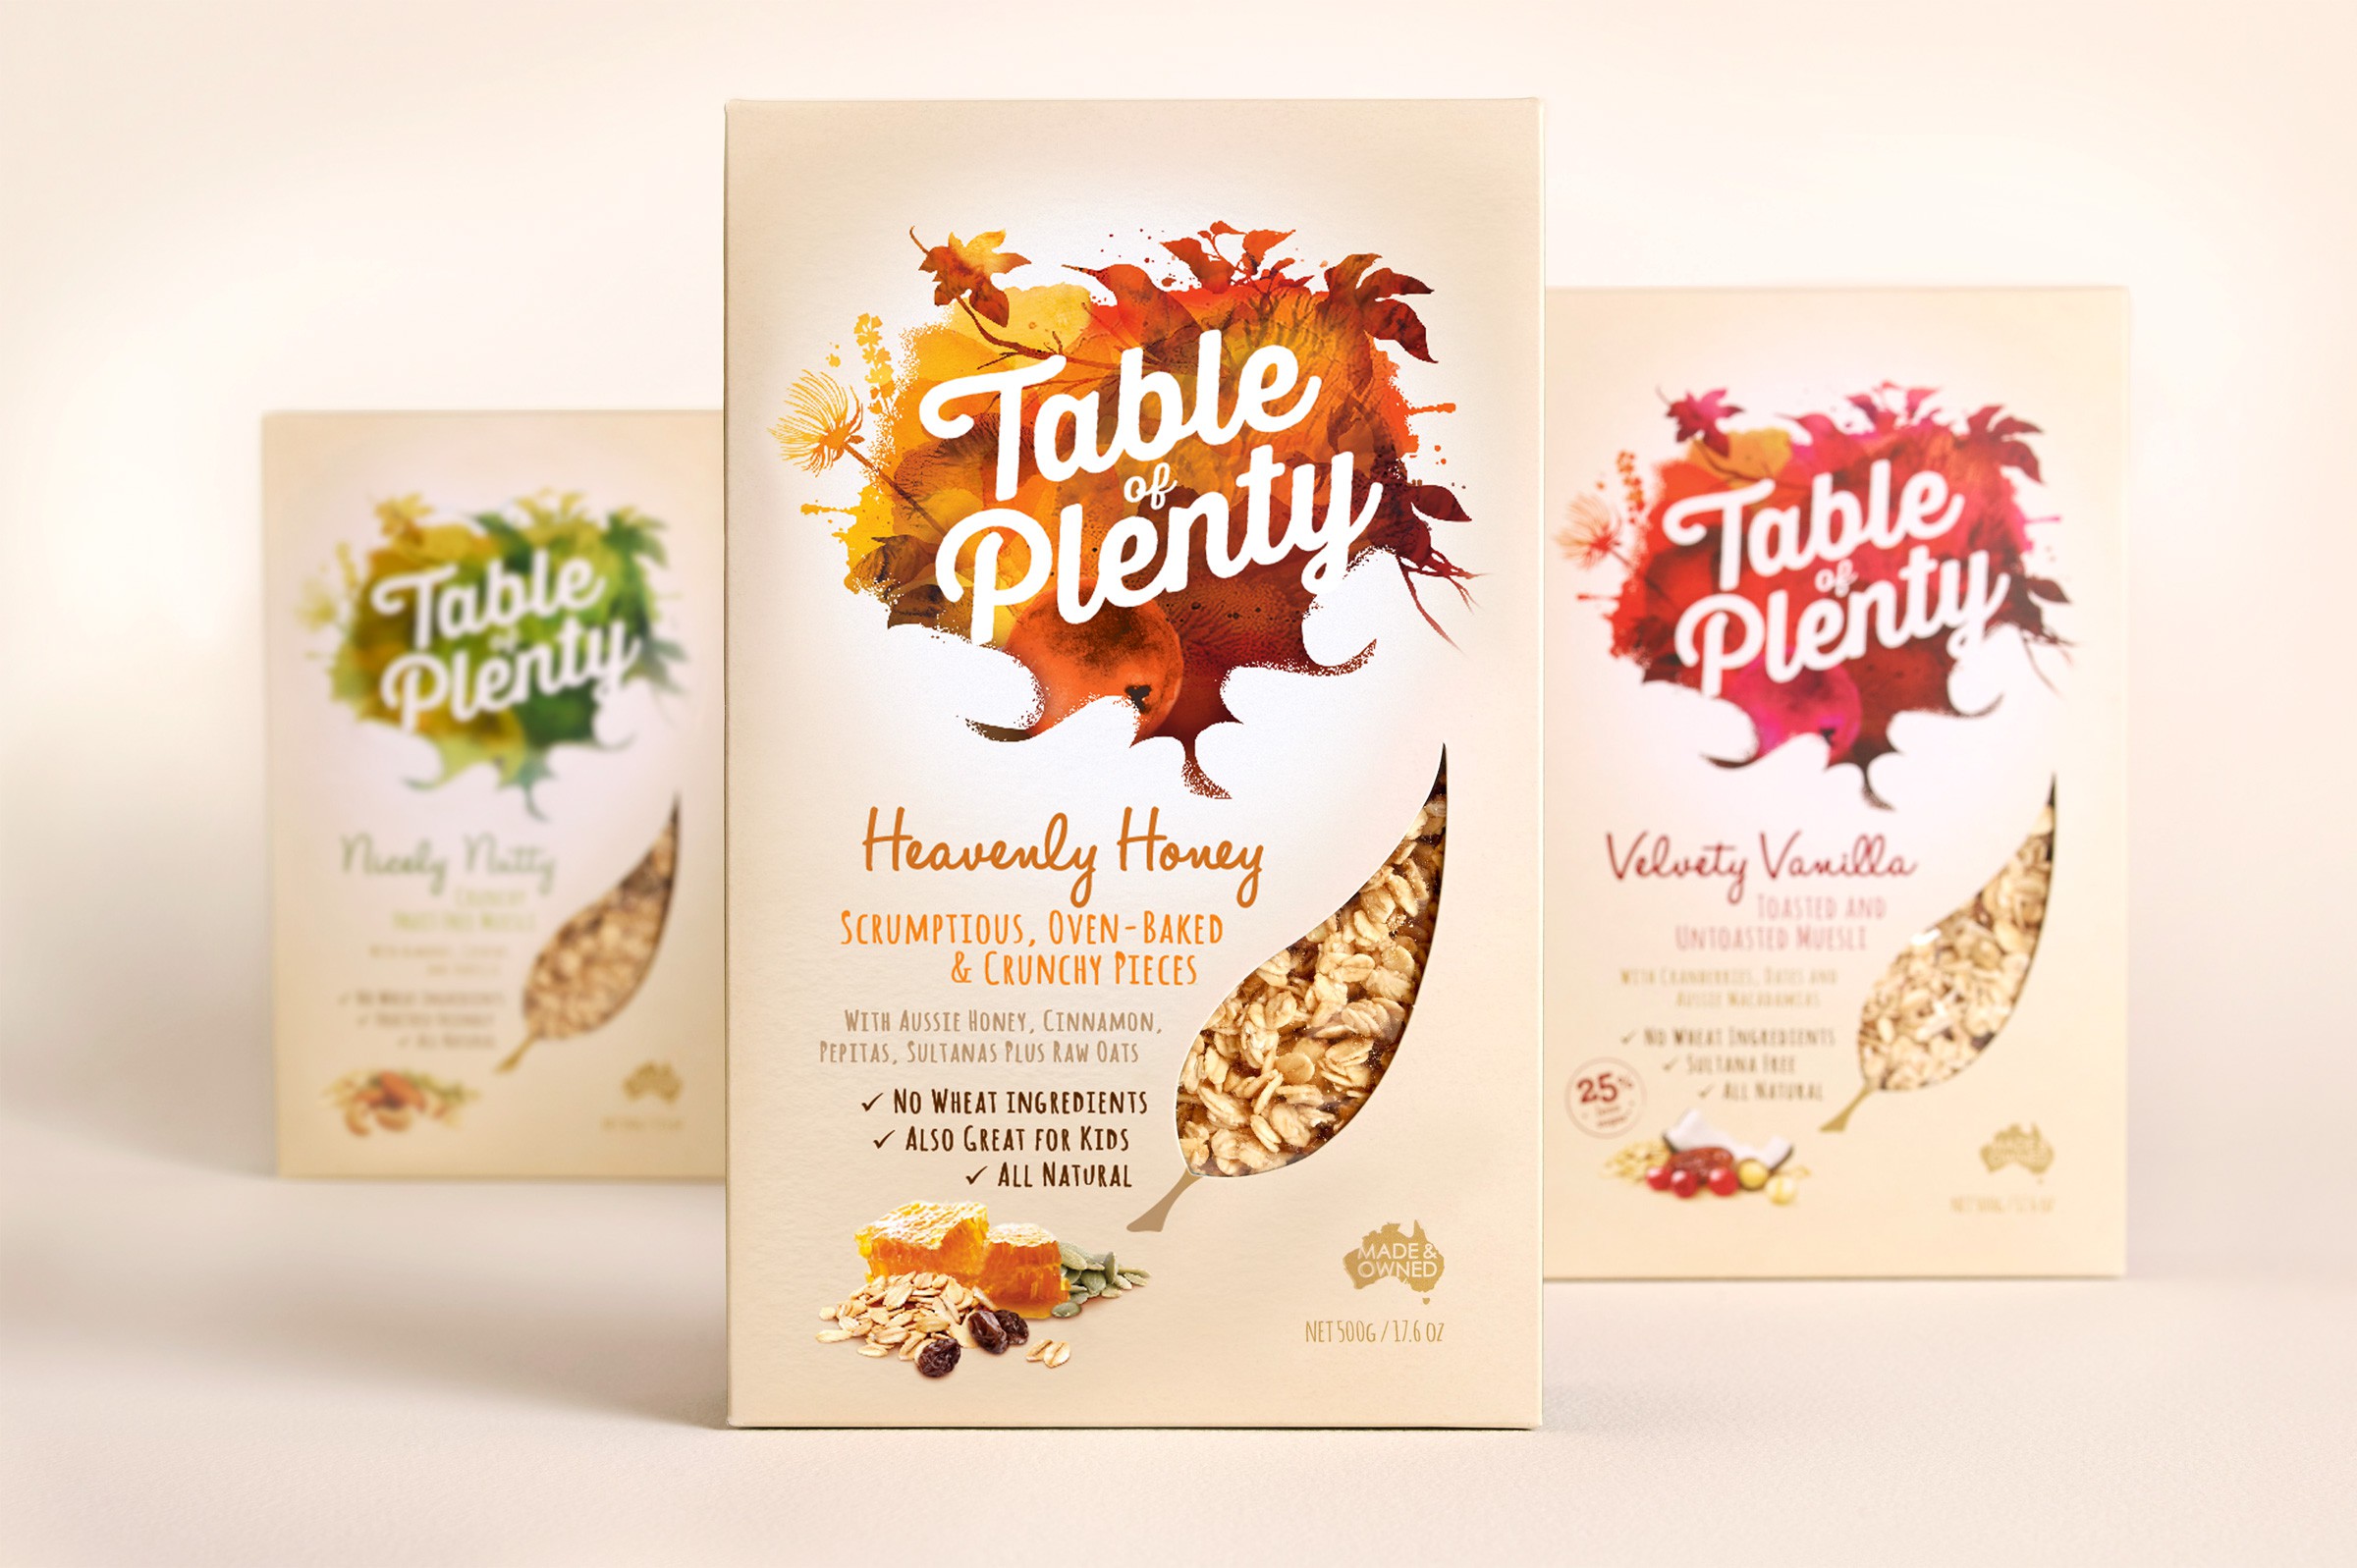 Table-of-Plenty_packaging-rebrand-design-range